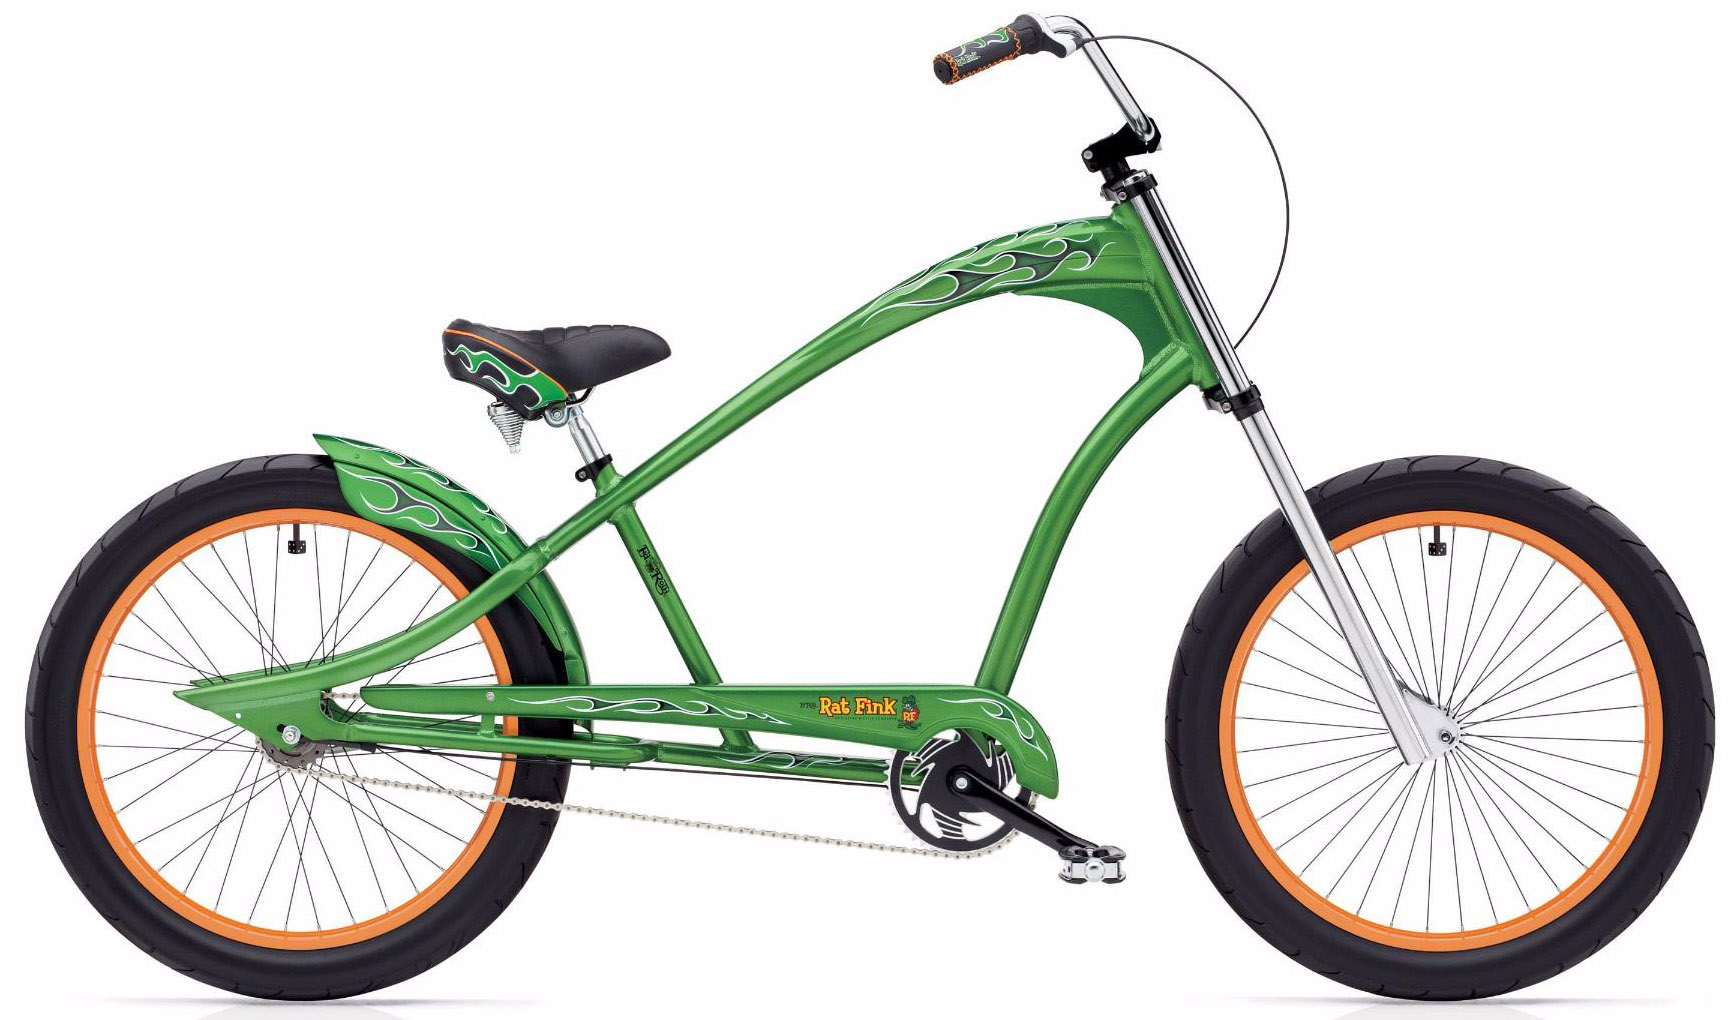  Отзывы о Городском велосипеде Electra Cruiser Rat Fink 3i 2020